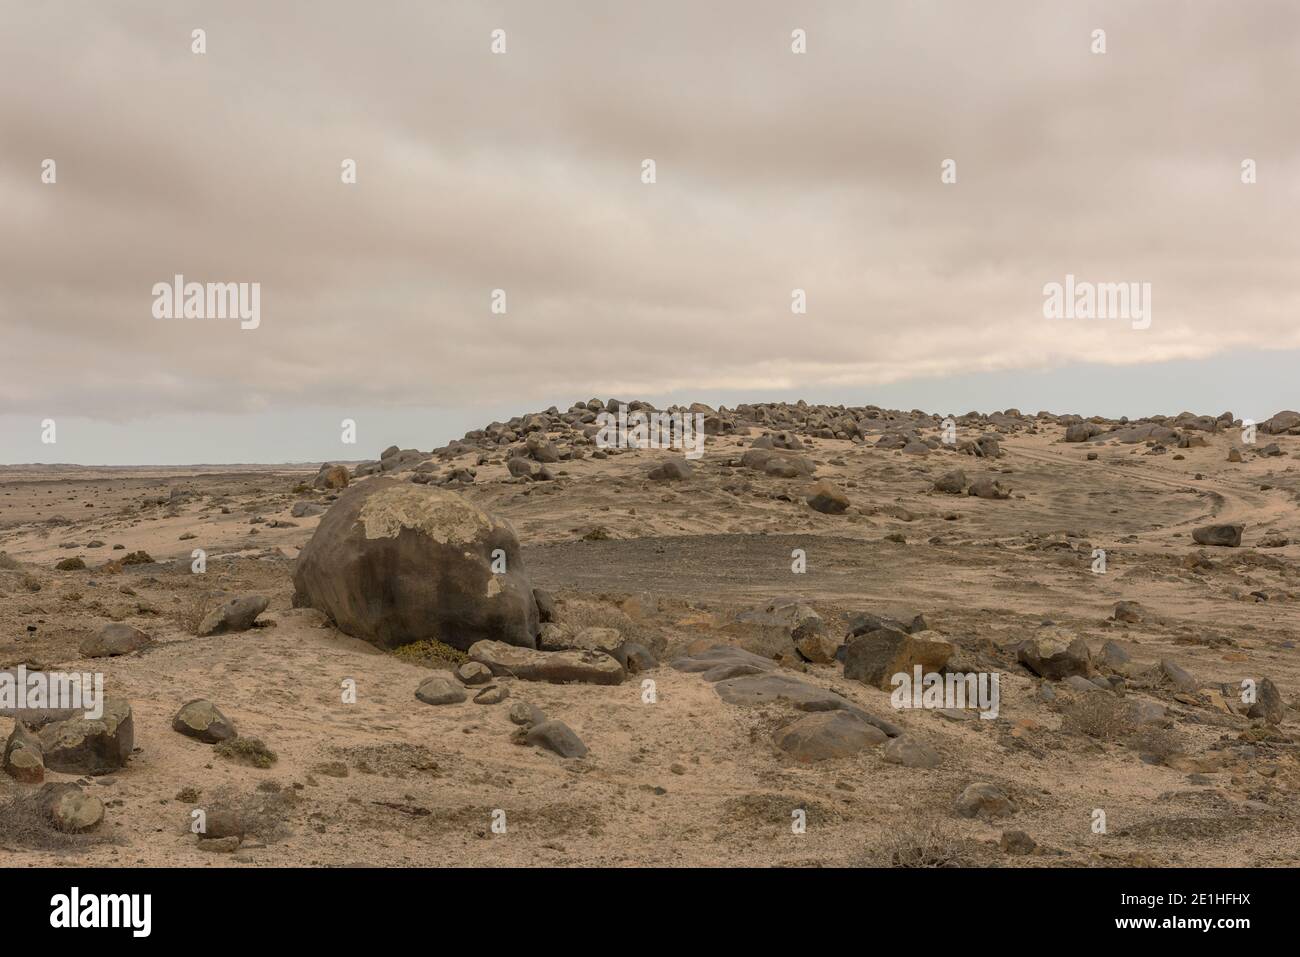 Wunderschöne steinerne Landschaft in der Namib Wüste nahe der Atlantikküste, Namibia Stockfoto